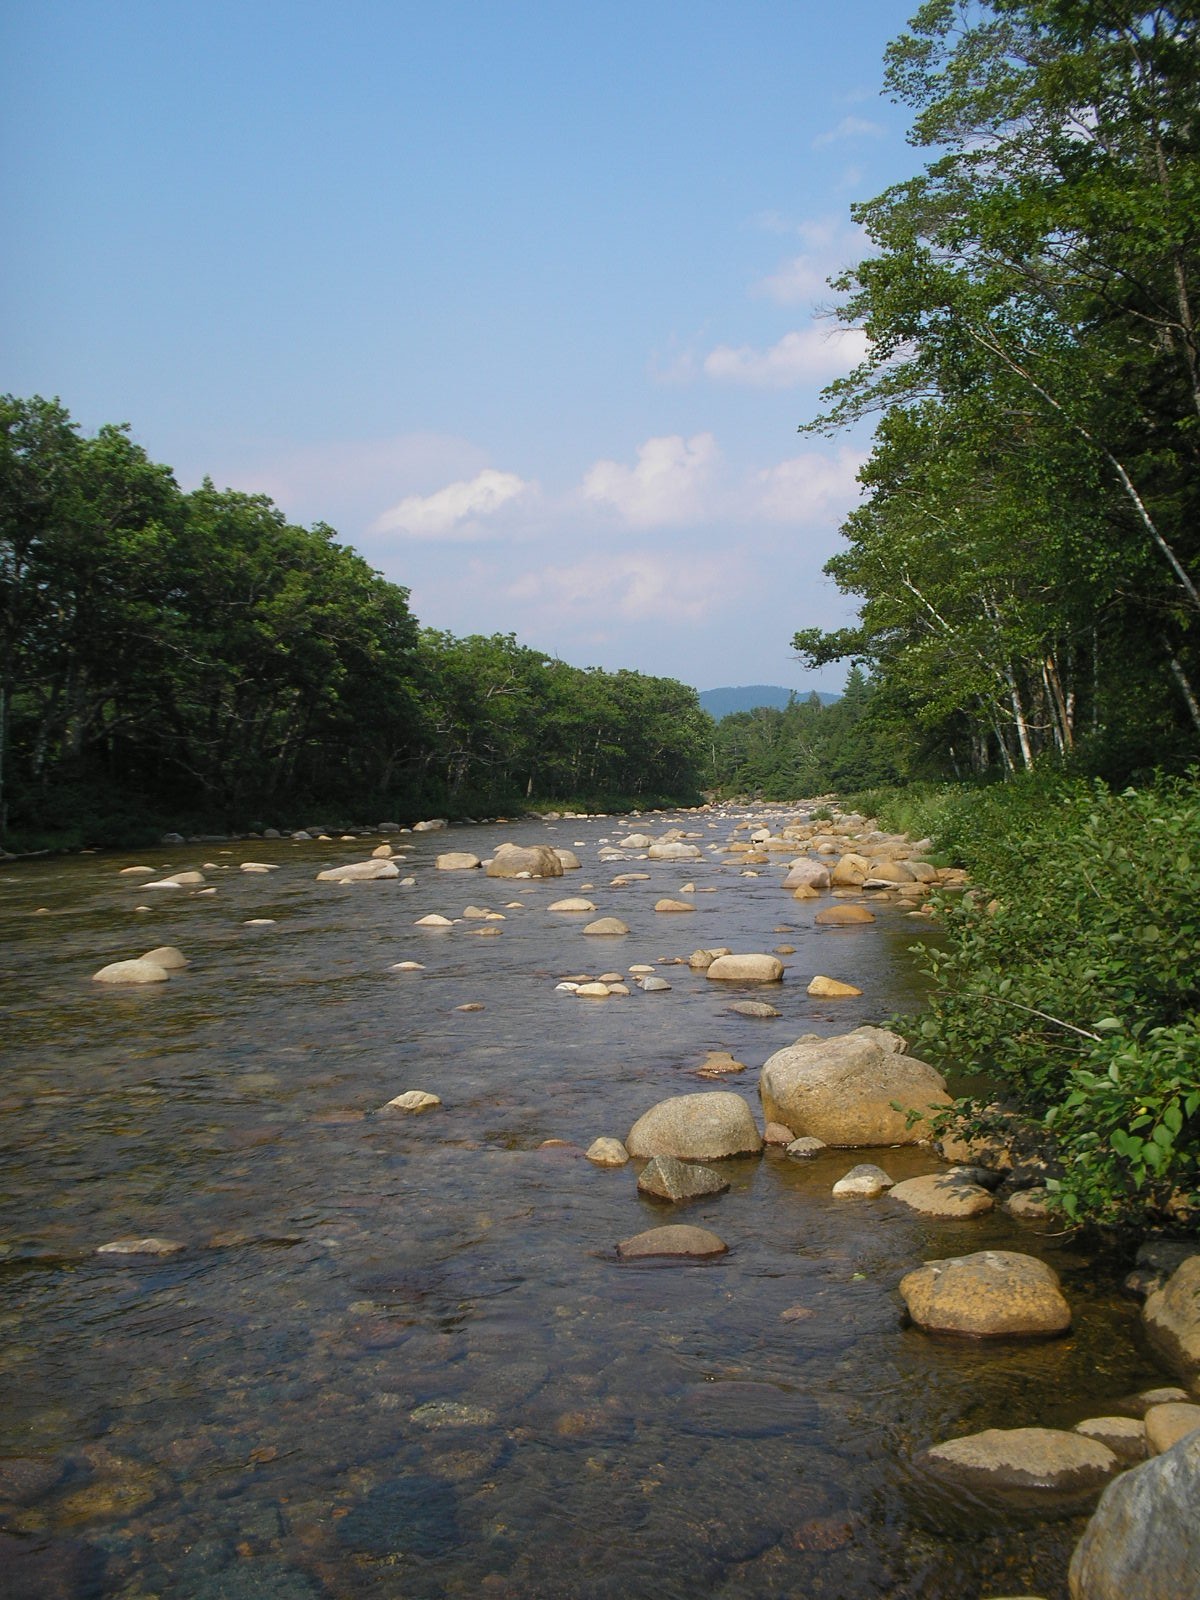 Saco River, courtesy of VRAP